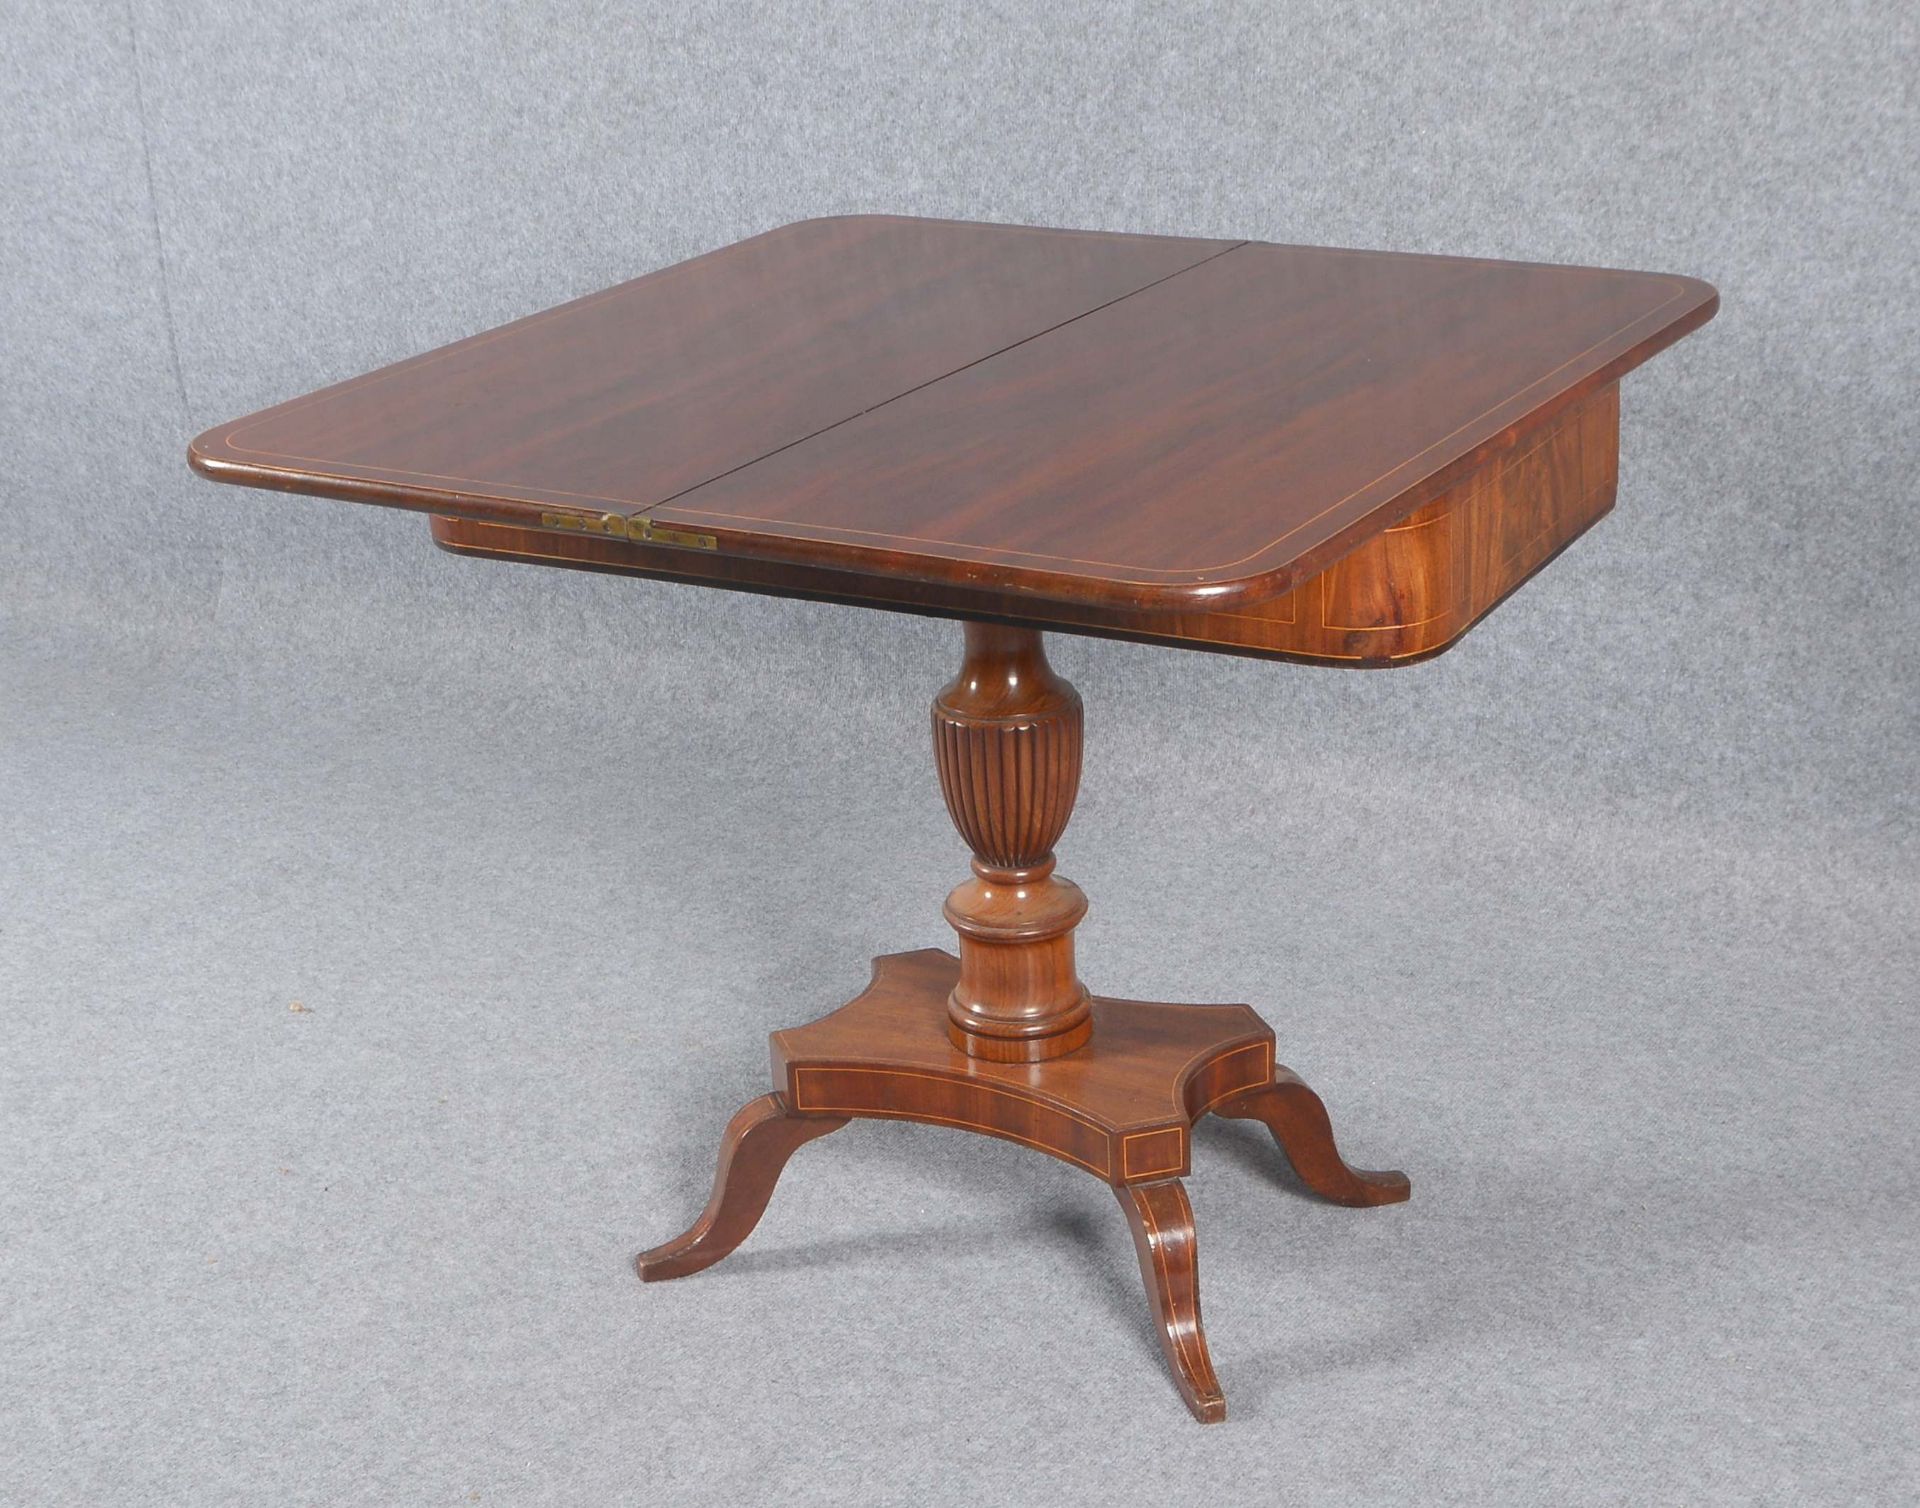 Konsolentisch/Spieltisch (Biedermeier), Mahagoni auf Weichholz, mit Fadenintarsien; Höhe 75 cm, Brei - Bild 3 aus 3